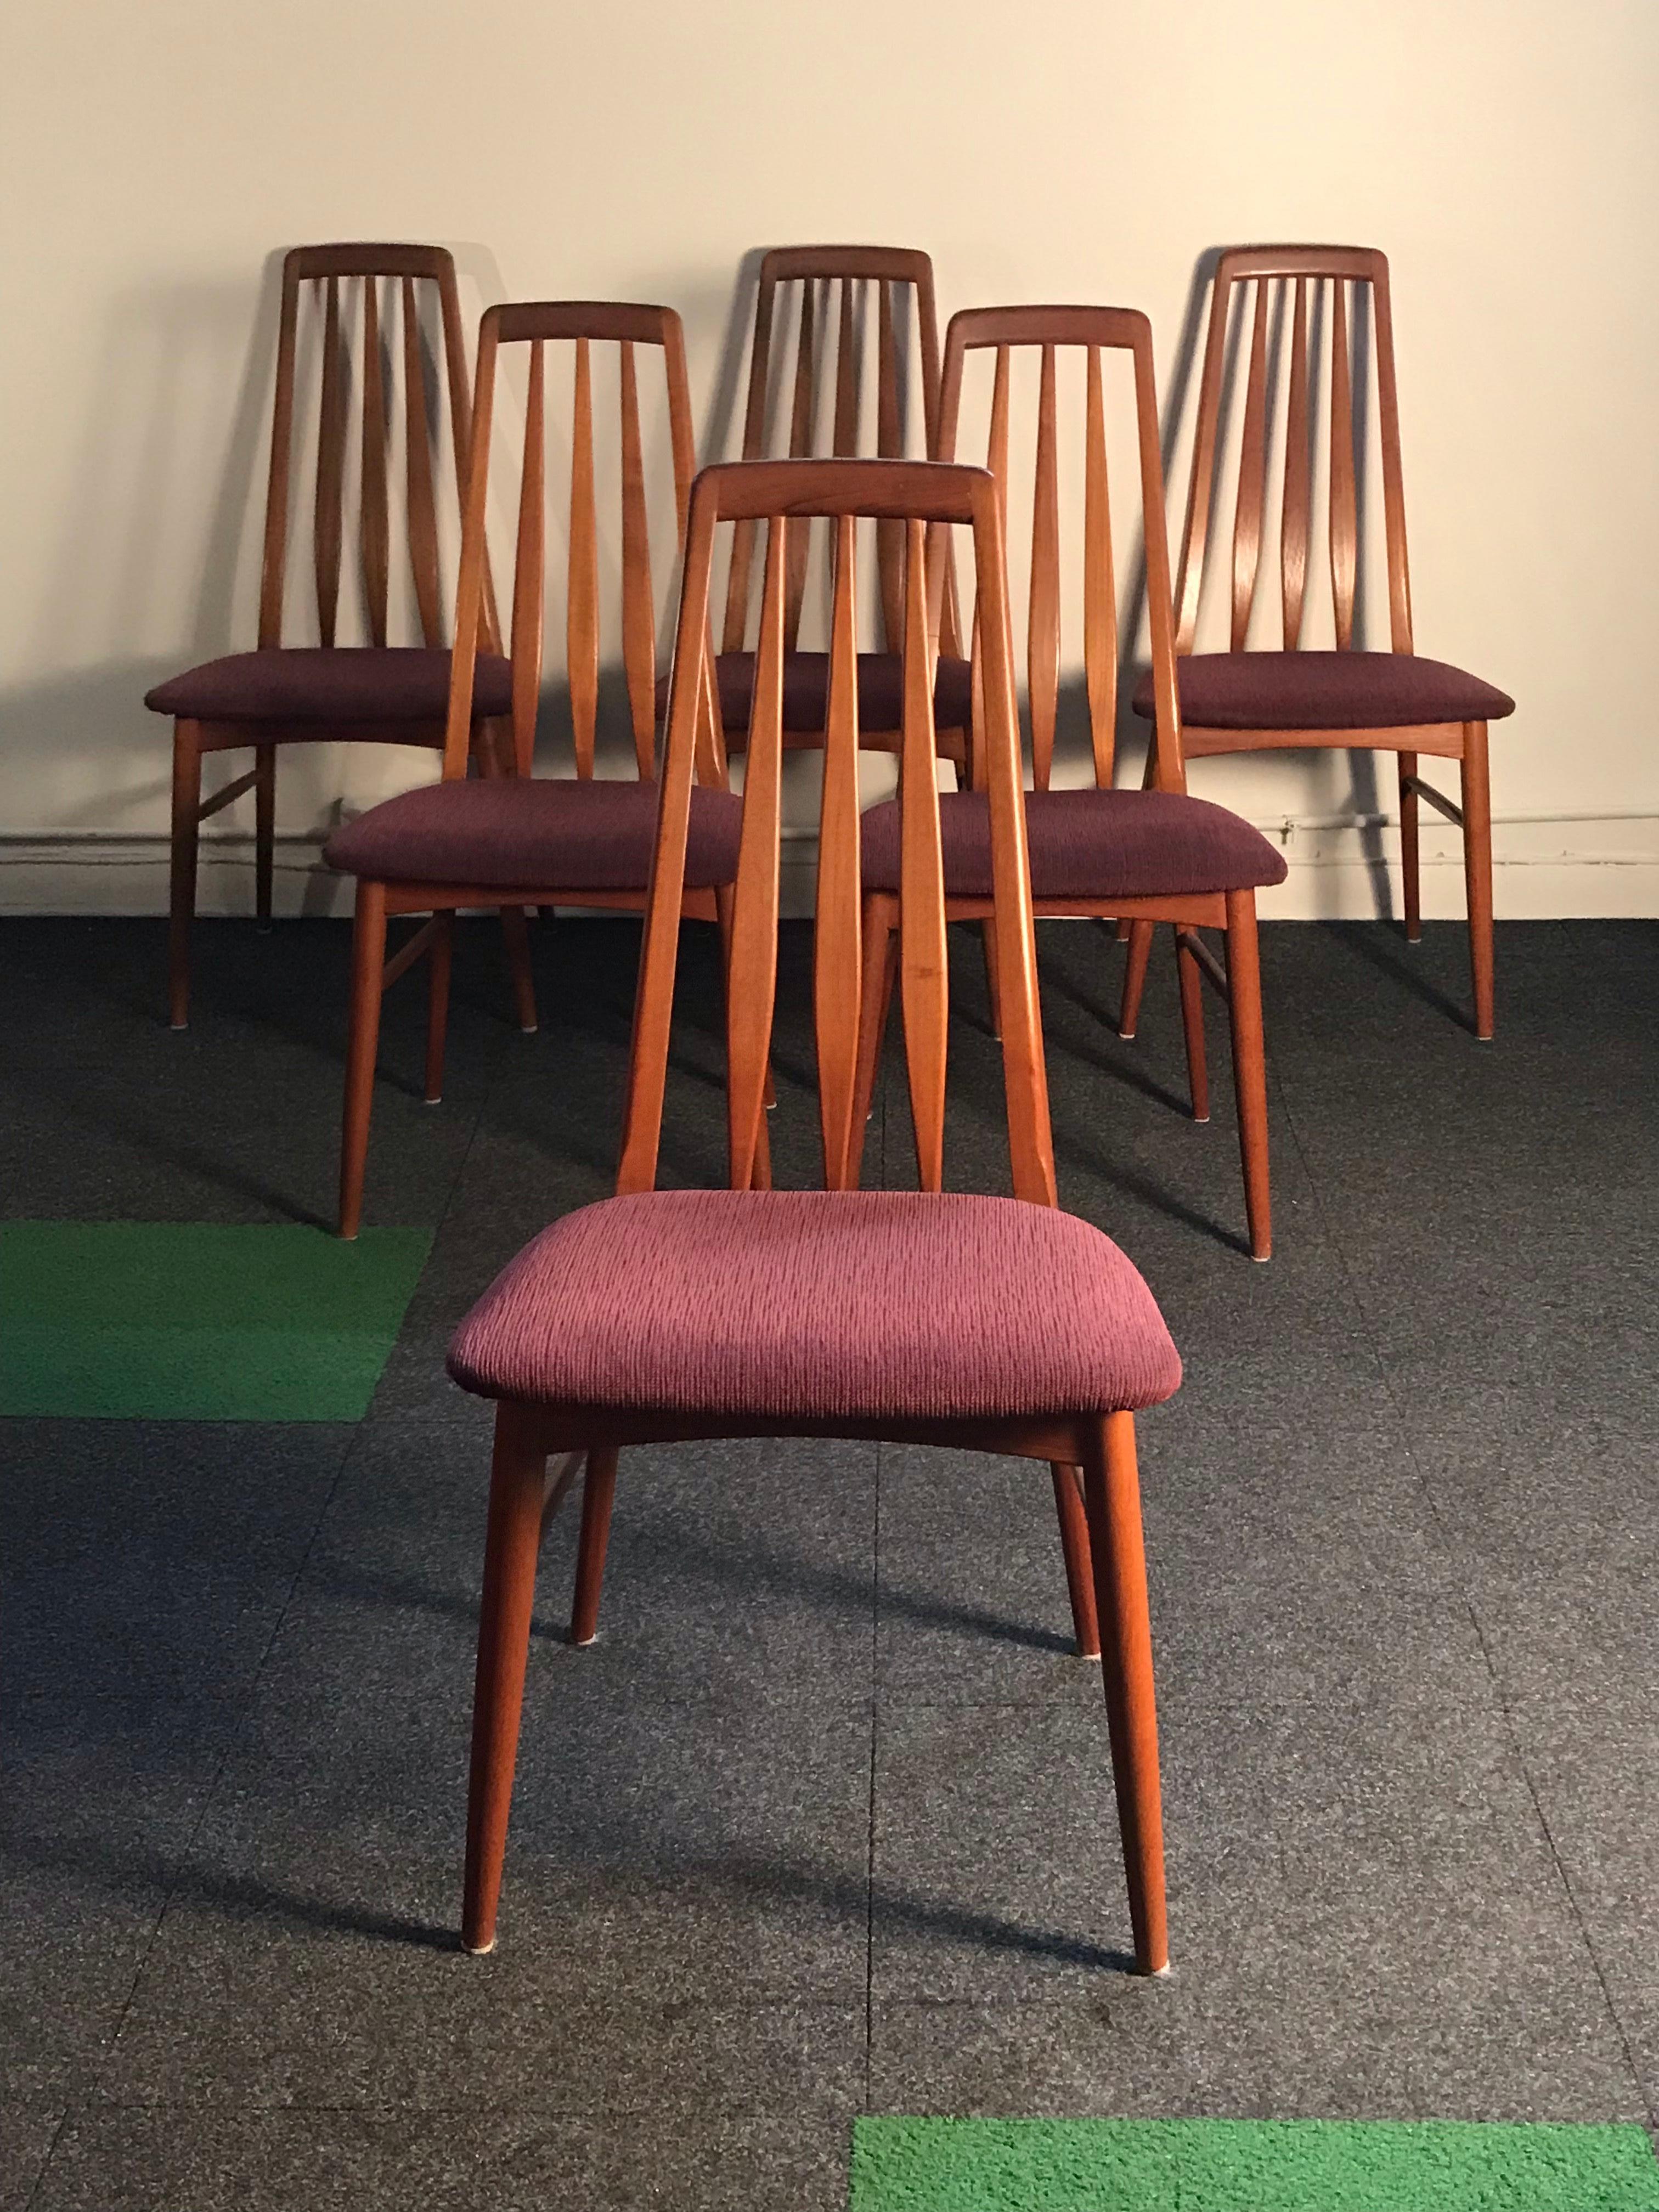 20th Century  Six Teak Eva Dining Chairs by Neils Koefoed for Hornslet Mobelfabrik  Denmark